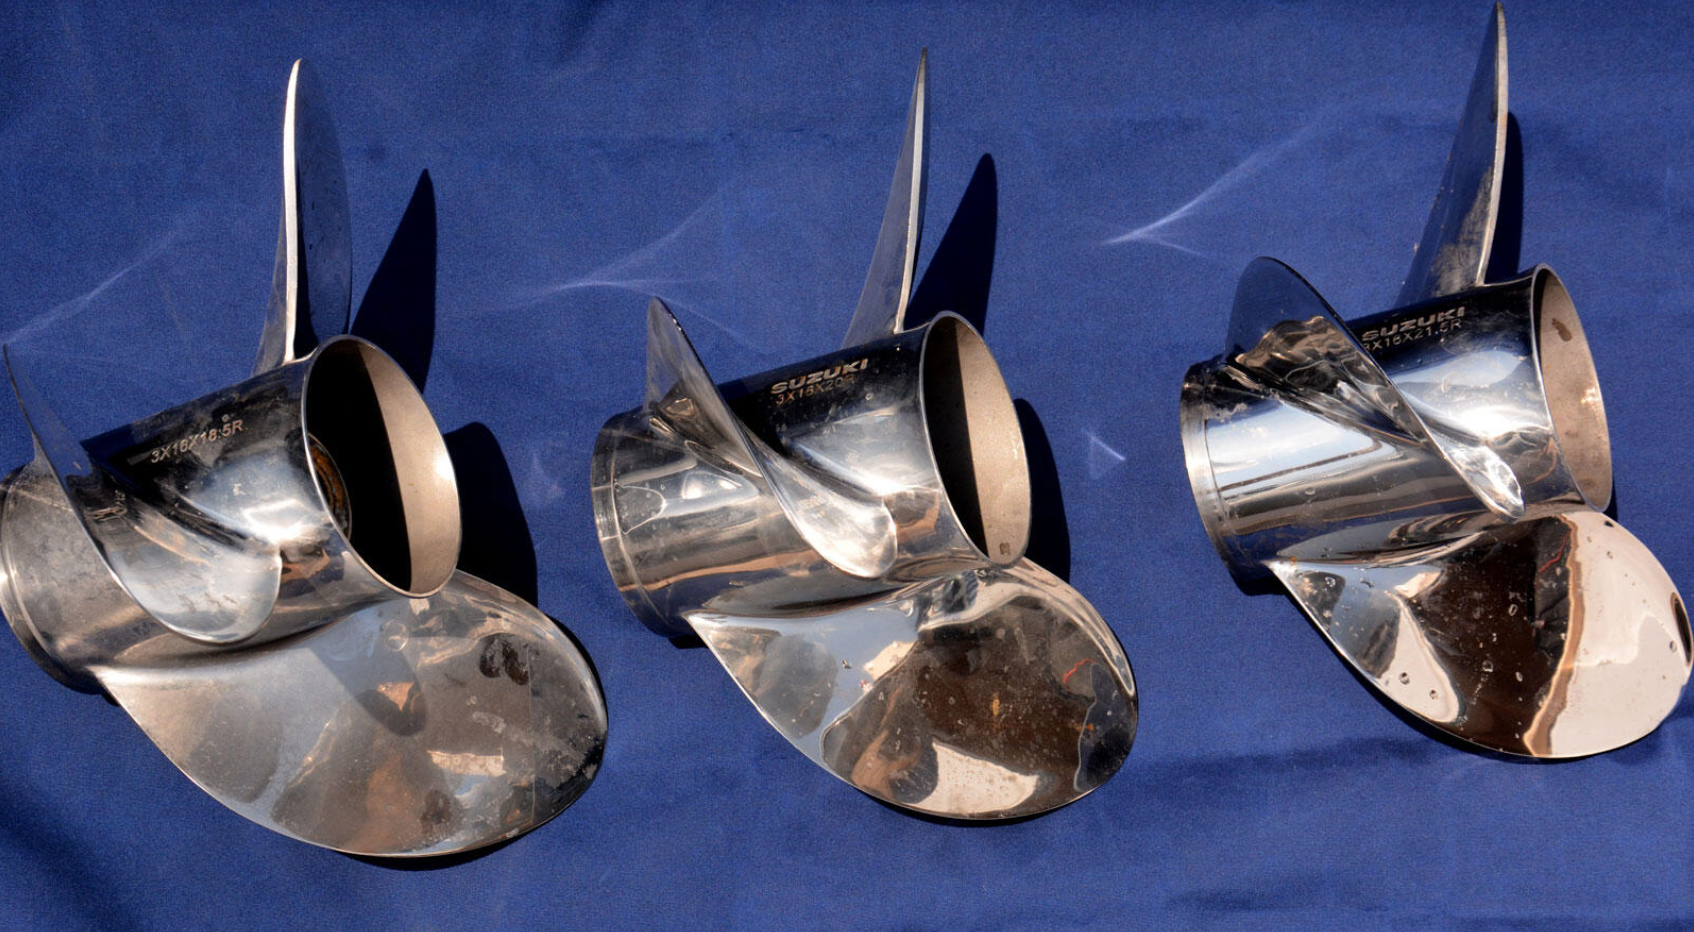 Suzuki propellers, stainless-steel propellers